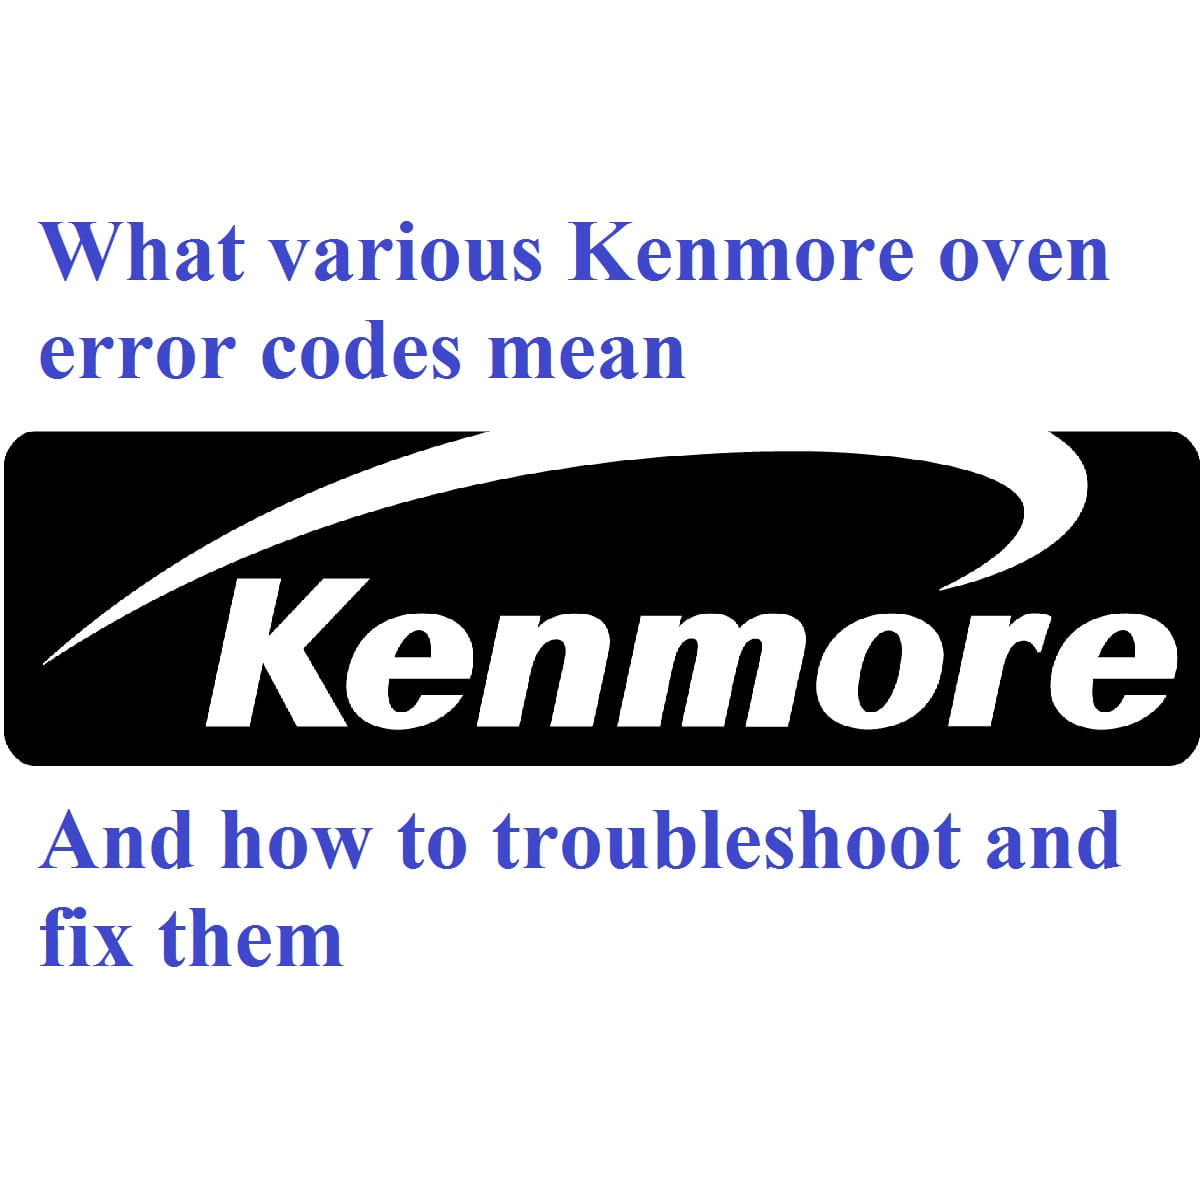 Kenmore oven error codes